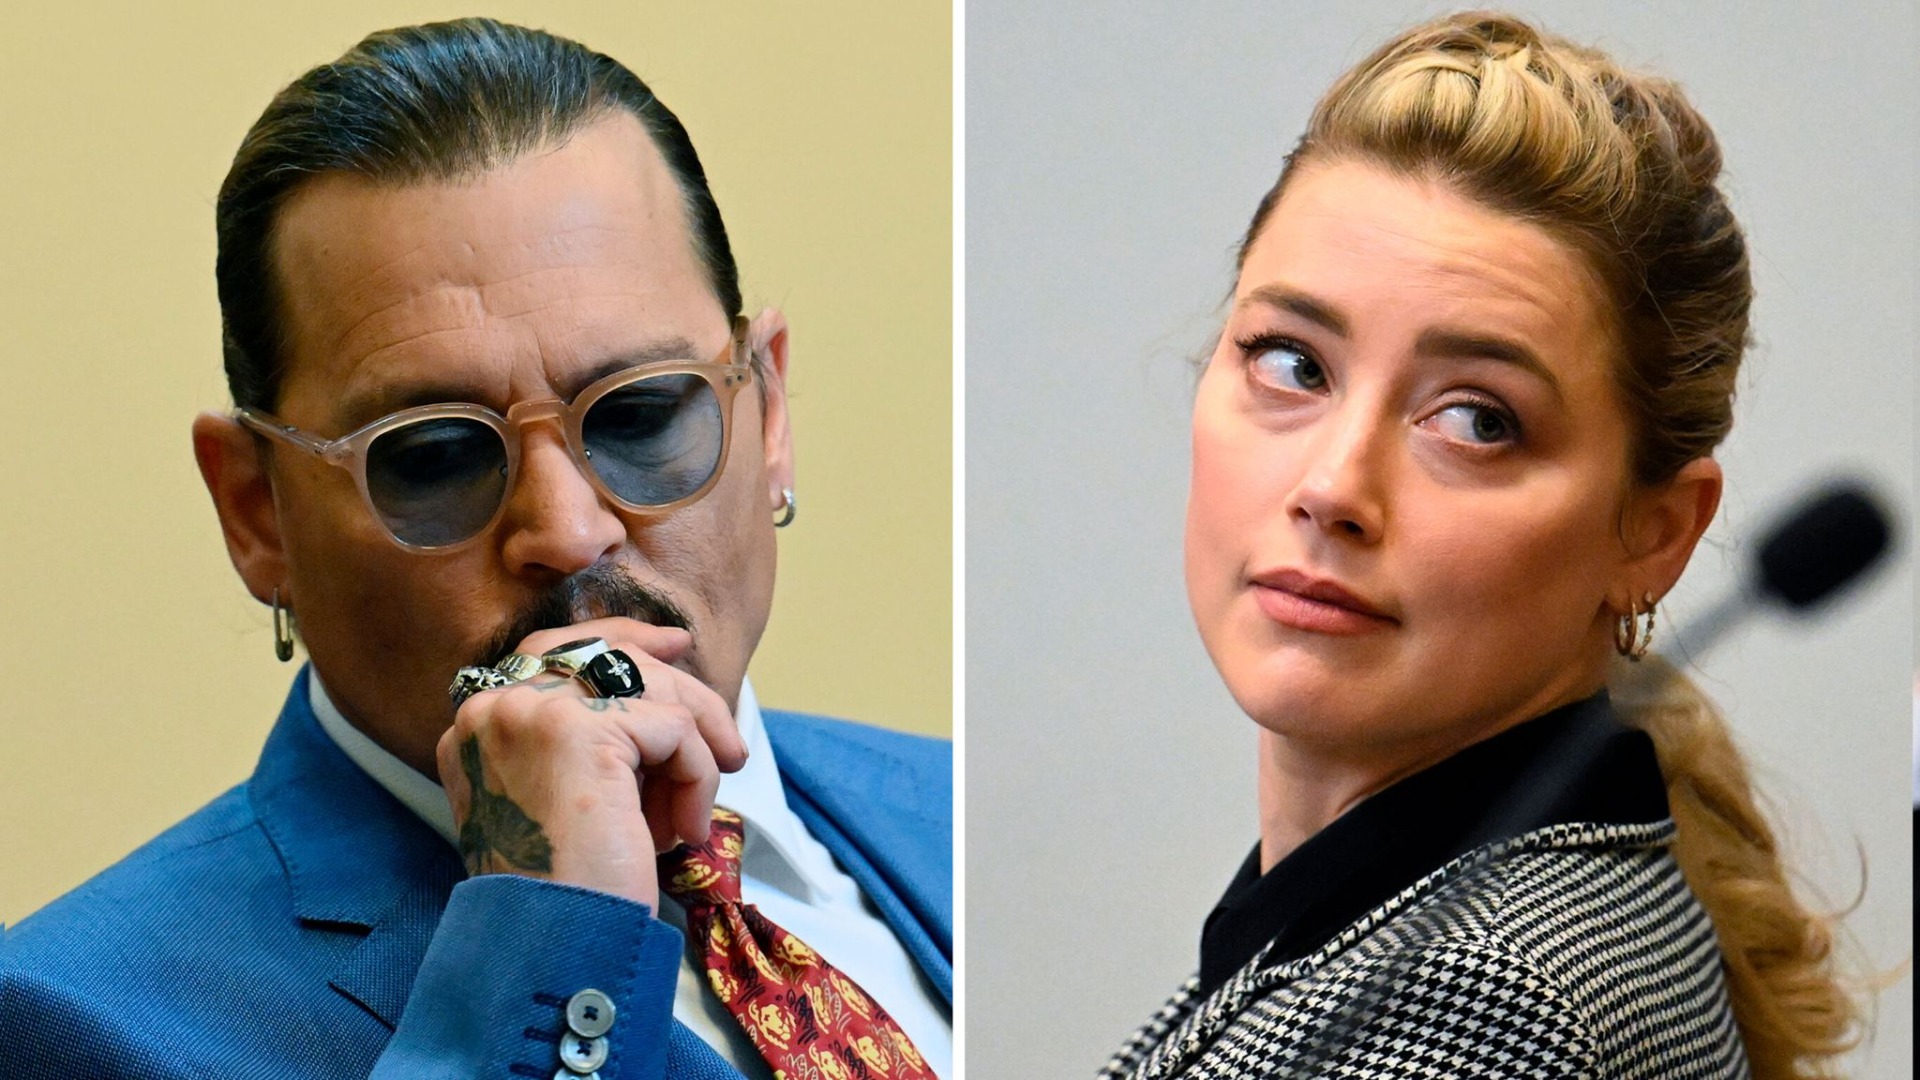 Johnny Depp-Amber Heard davasında yeni gelişme: Bebeğin babası sensin!